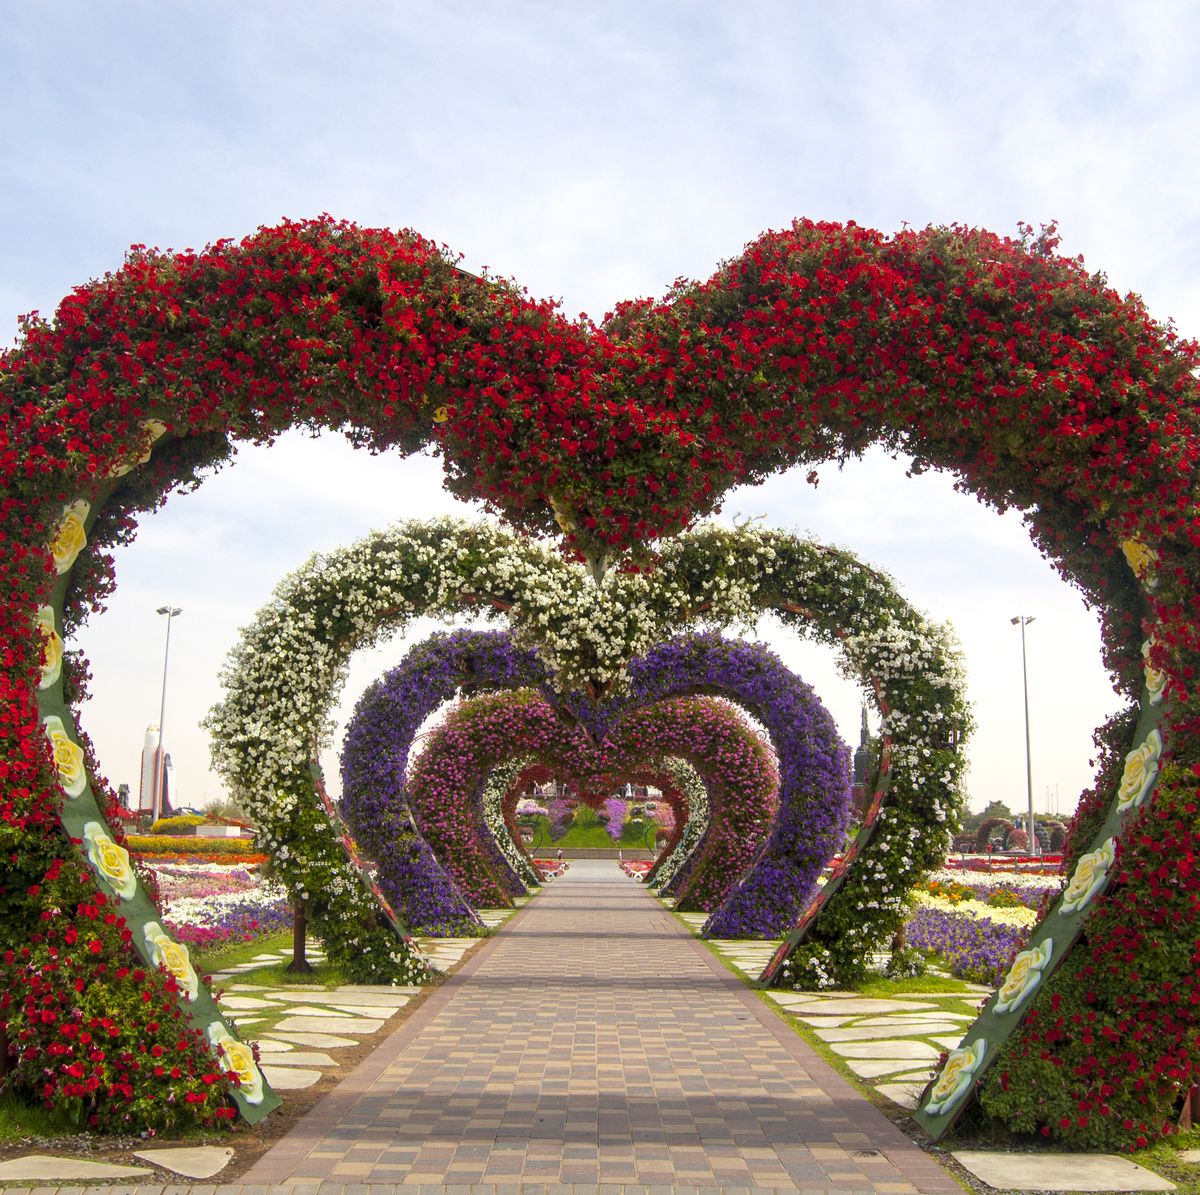 Dubai Miracle Garden A Virtual Tour Of